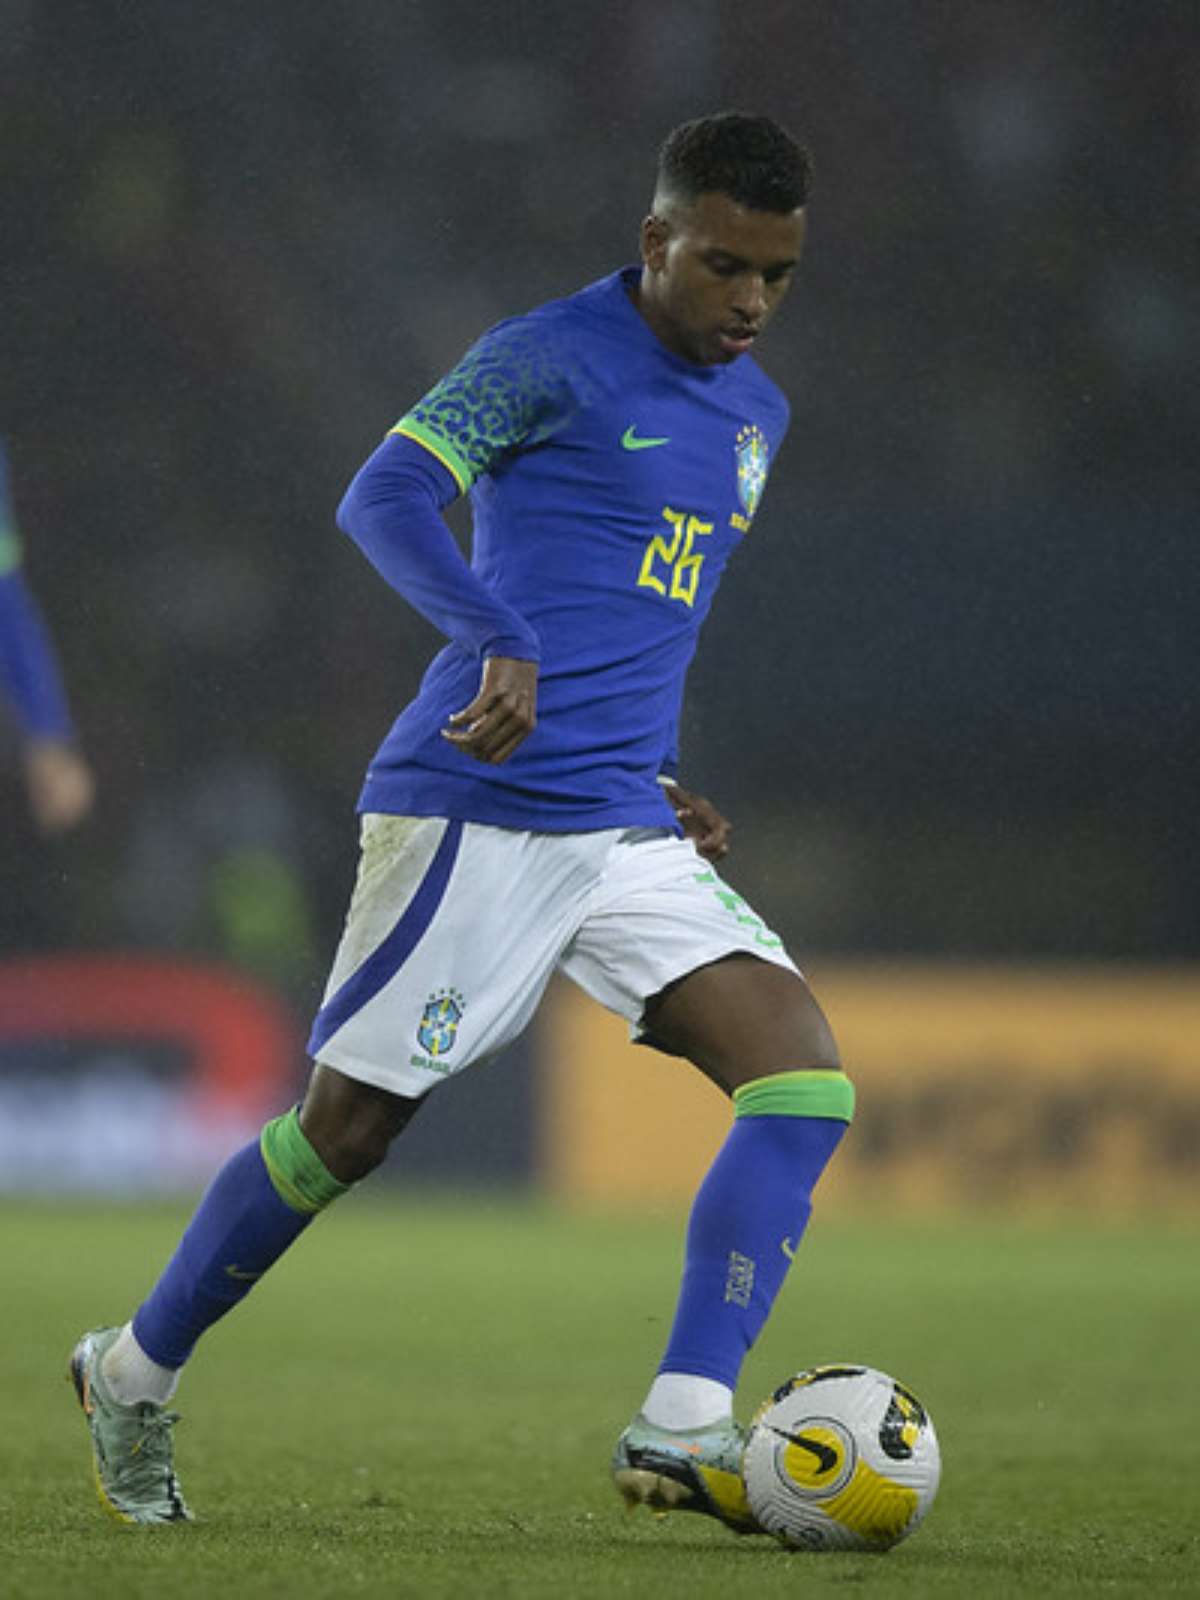 Seleção estreia camisa azul contra Camarões e agrada supersticiosos